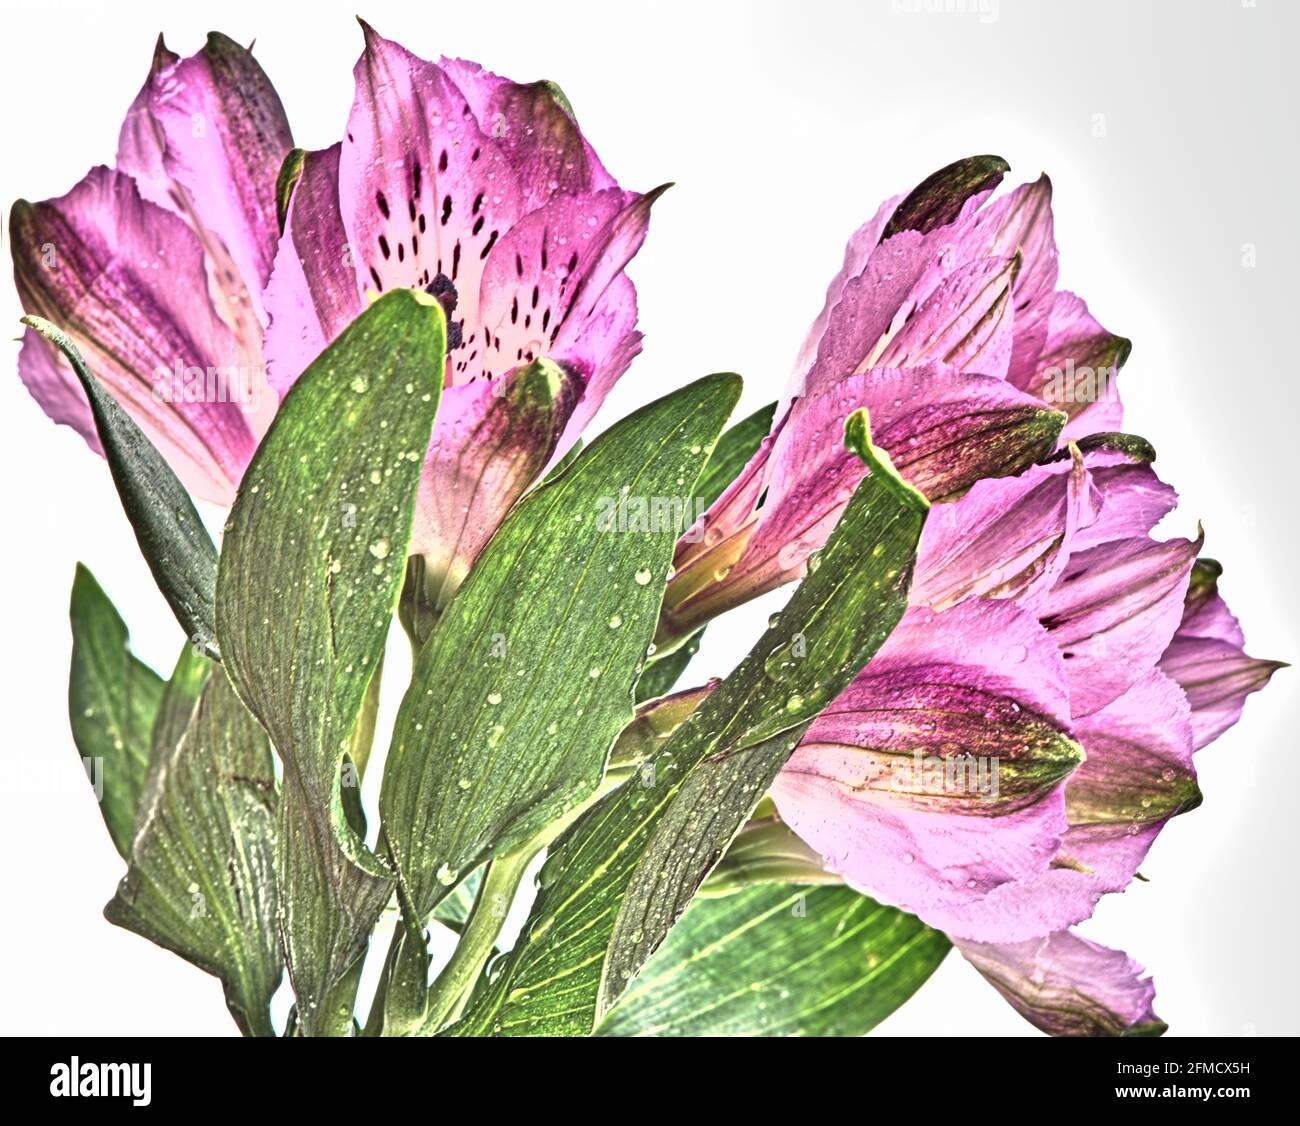 Alstroemerias-Blumen, die mit der HDR-Technik (High Dynamic Range) auf weißem Hintergrund aufgenommen wurden und eine verträumte Qualität verleihen. Stockfoto